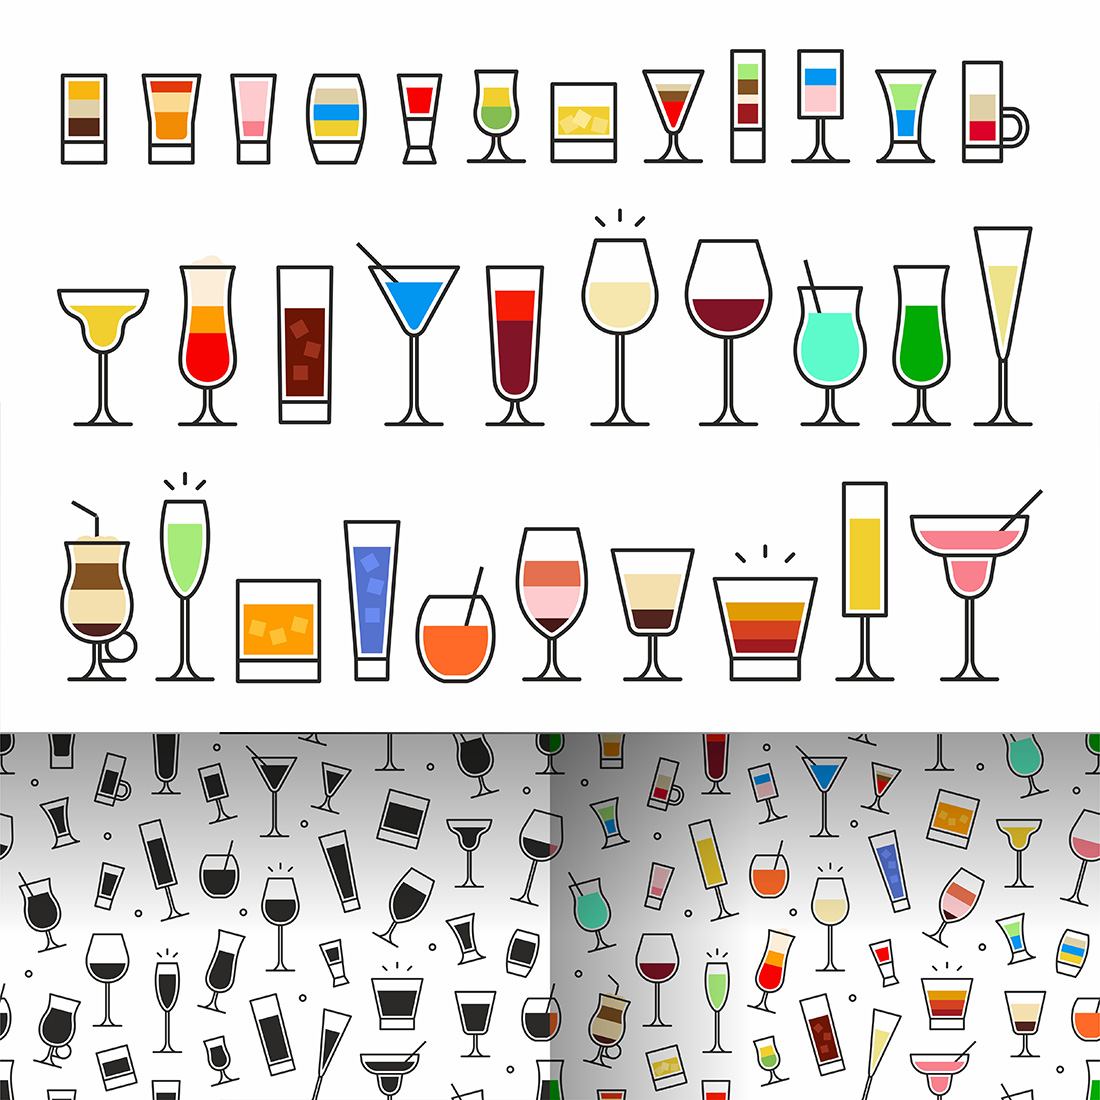 Cocktails Set + Pattern cover image.